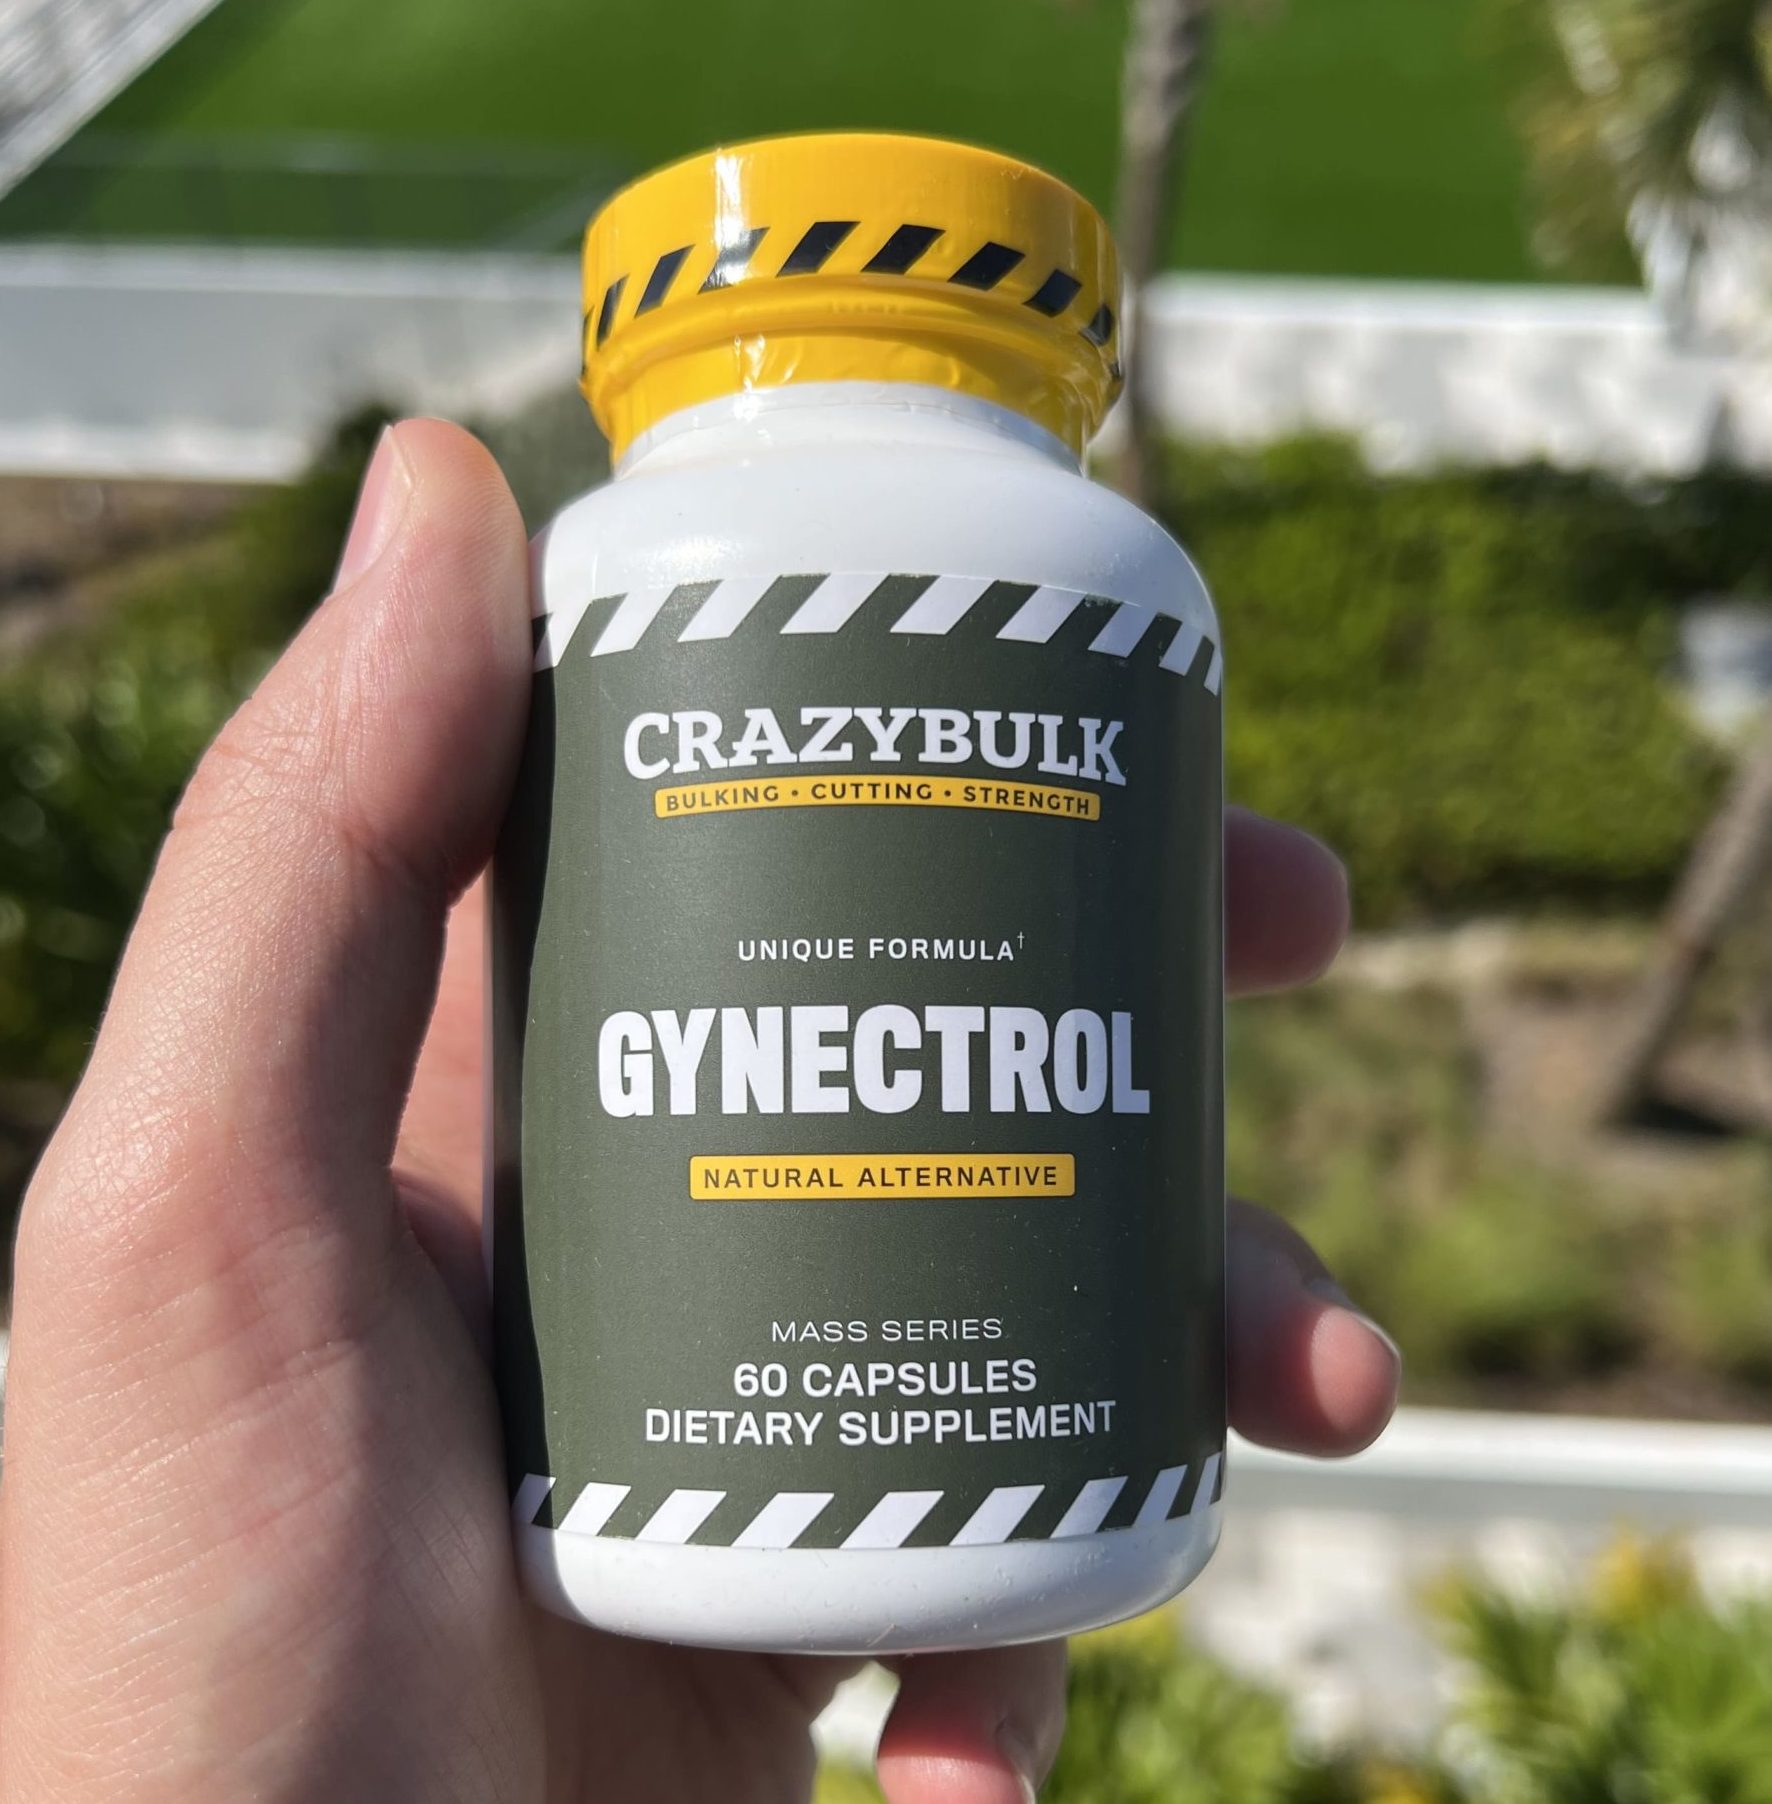 Gynectrol from Crazy Bulk